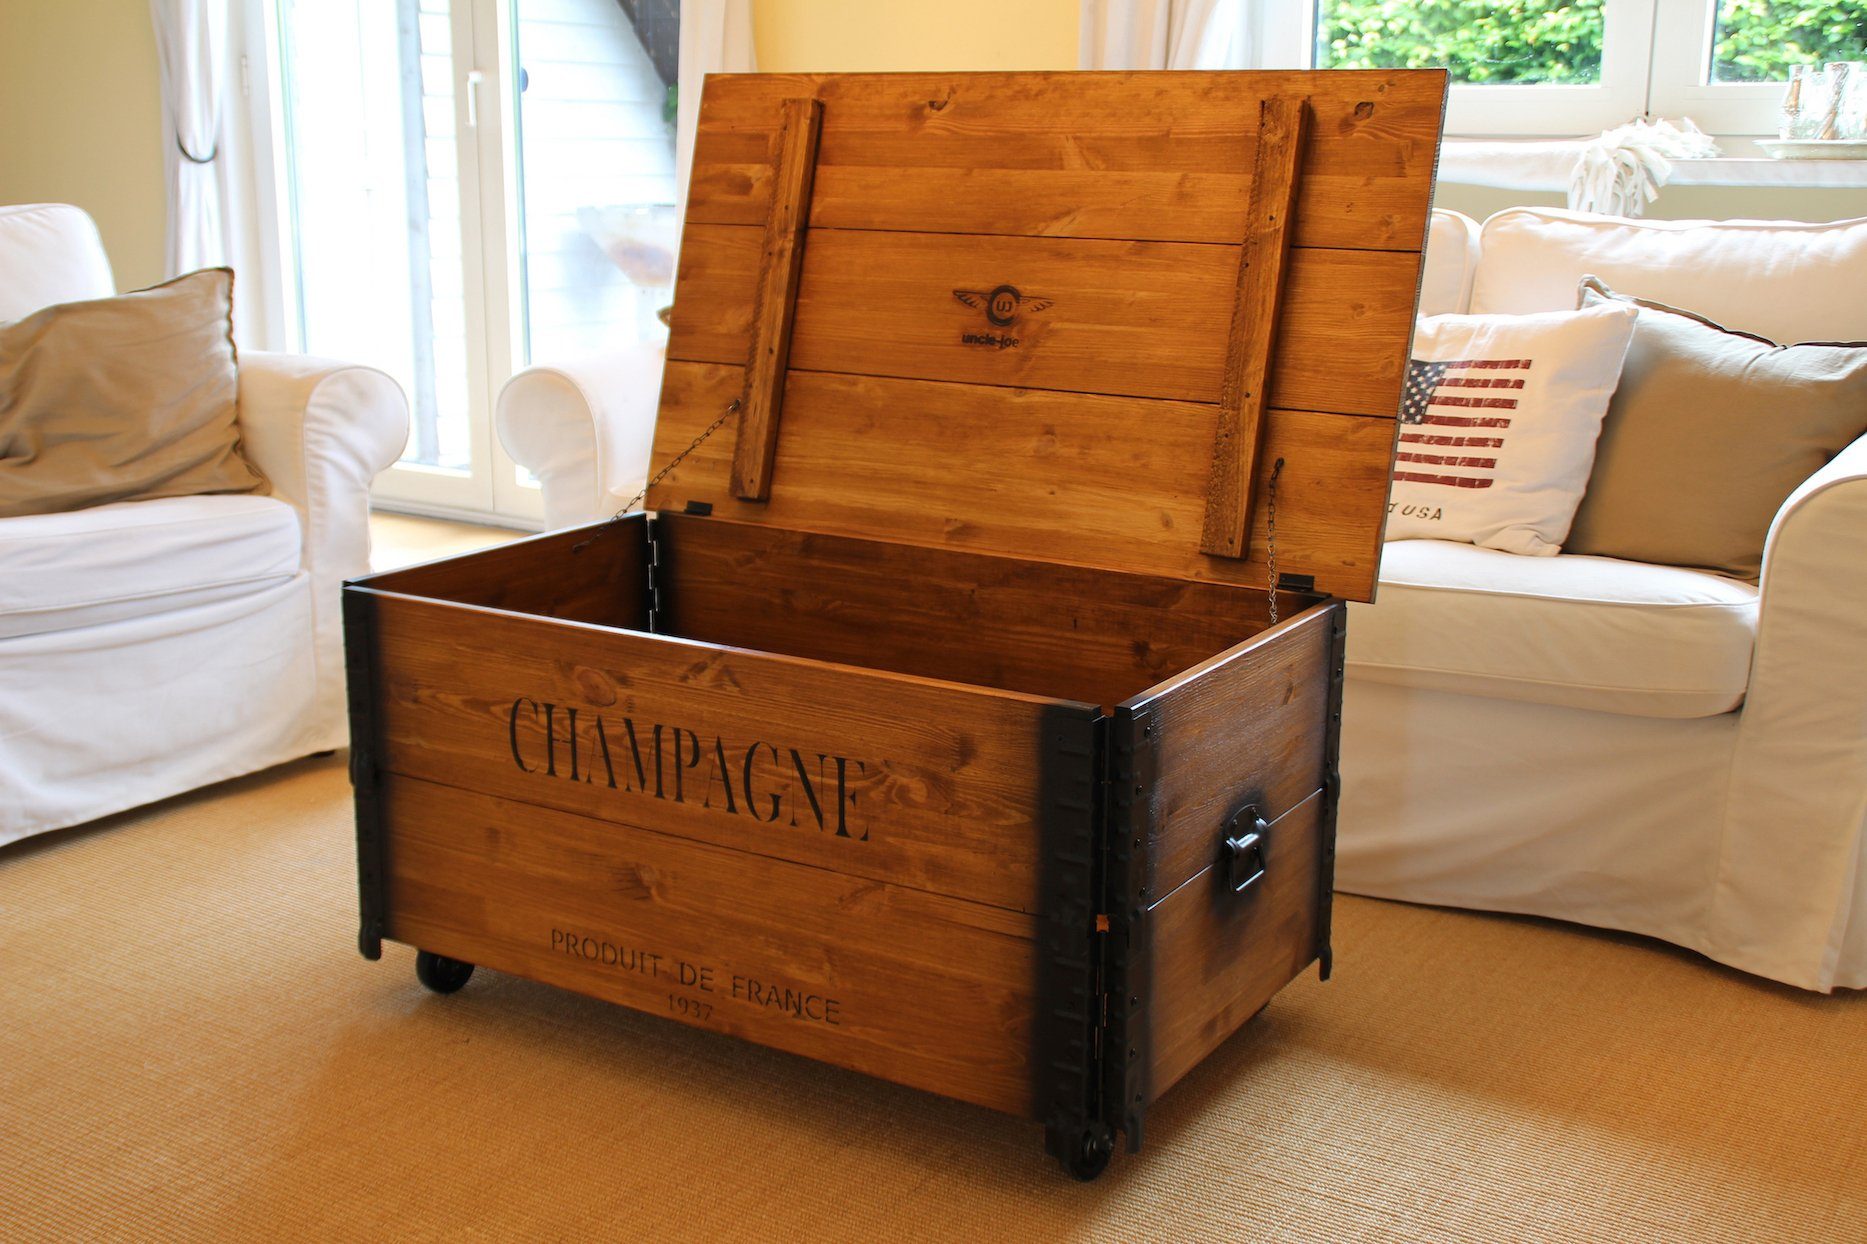 Uncle Joe´s Couchtisch XL Champagne, im Truhen-Design